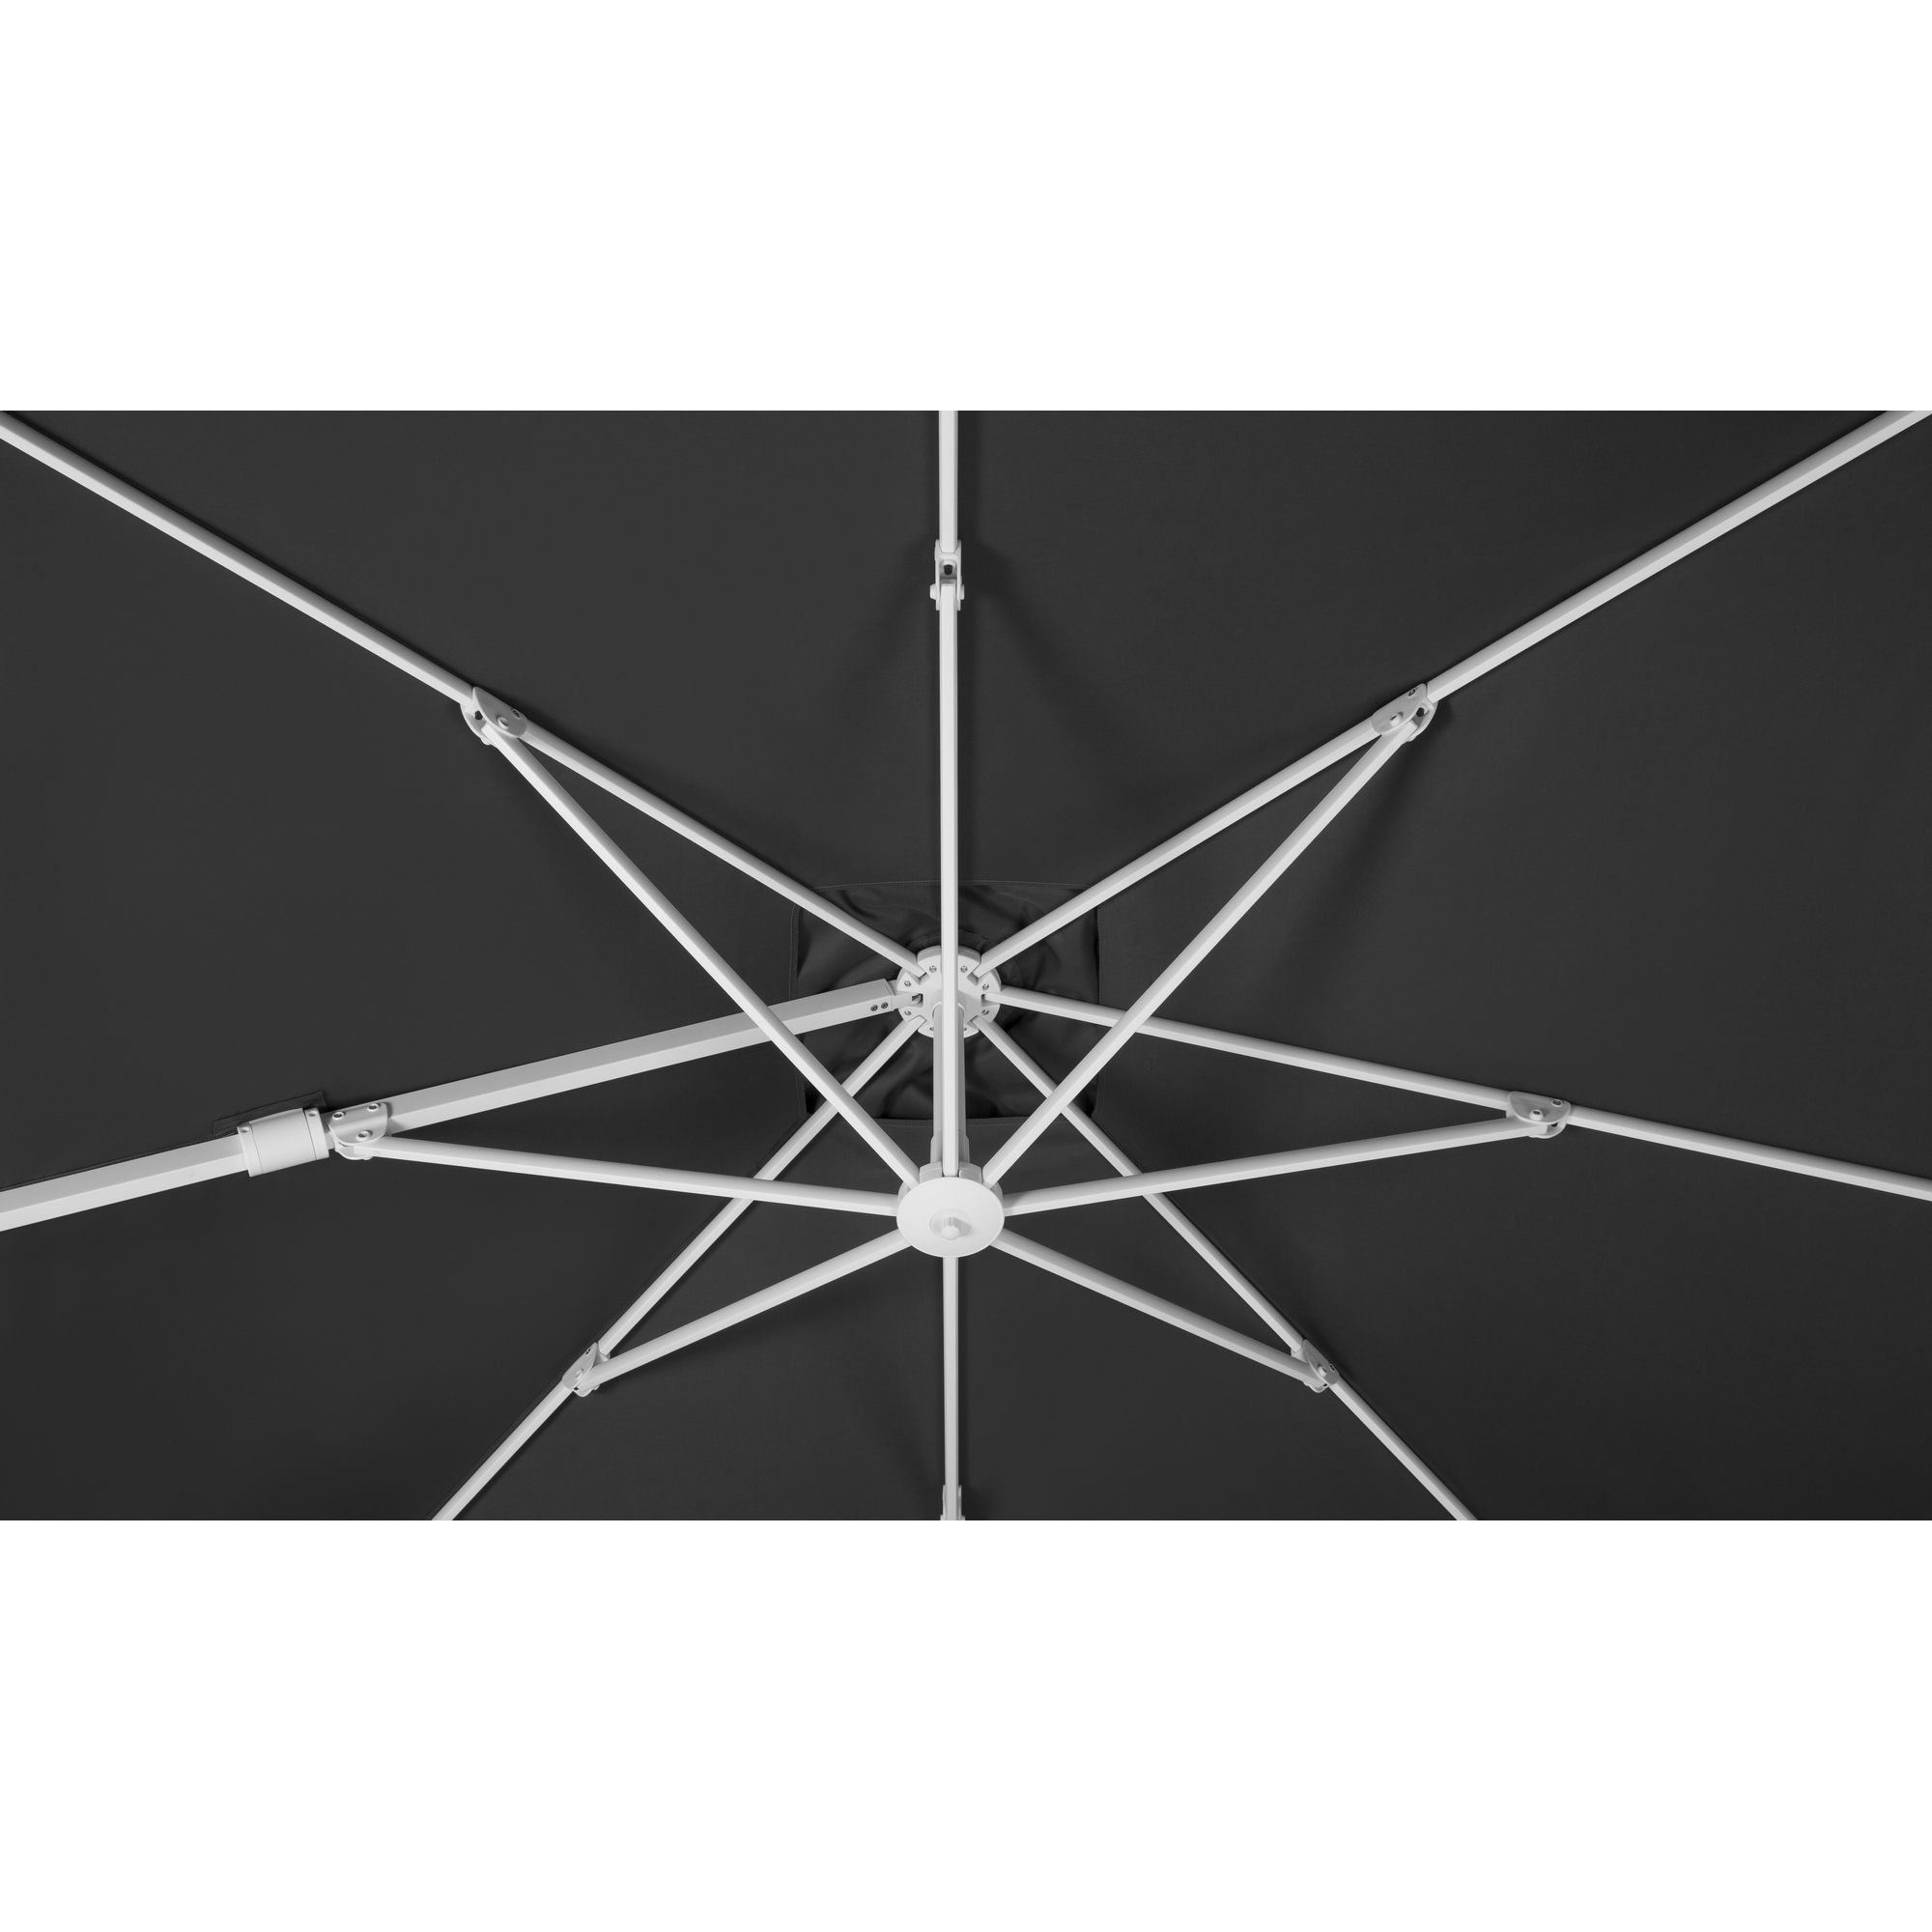 Ampelschirm 'Rhodos Twist Bianco' anthrazit 300 x 300 x 264 cm